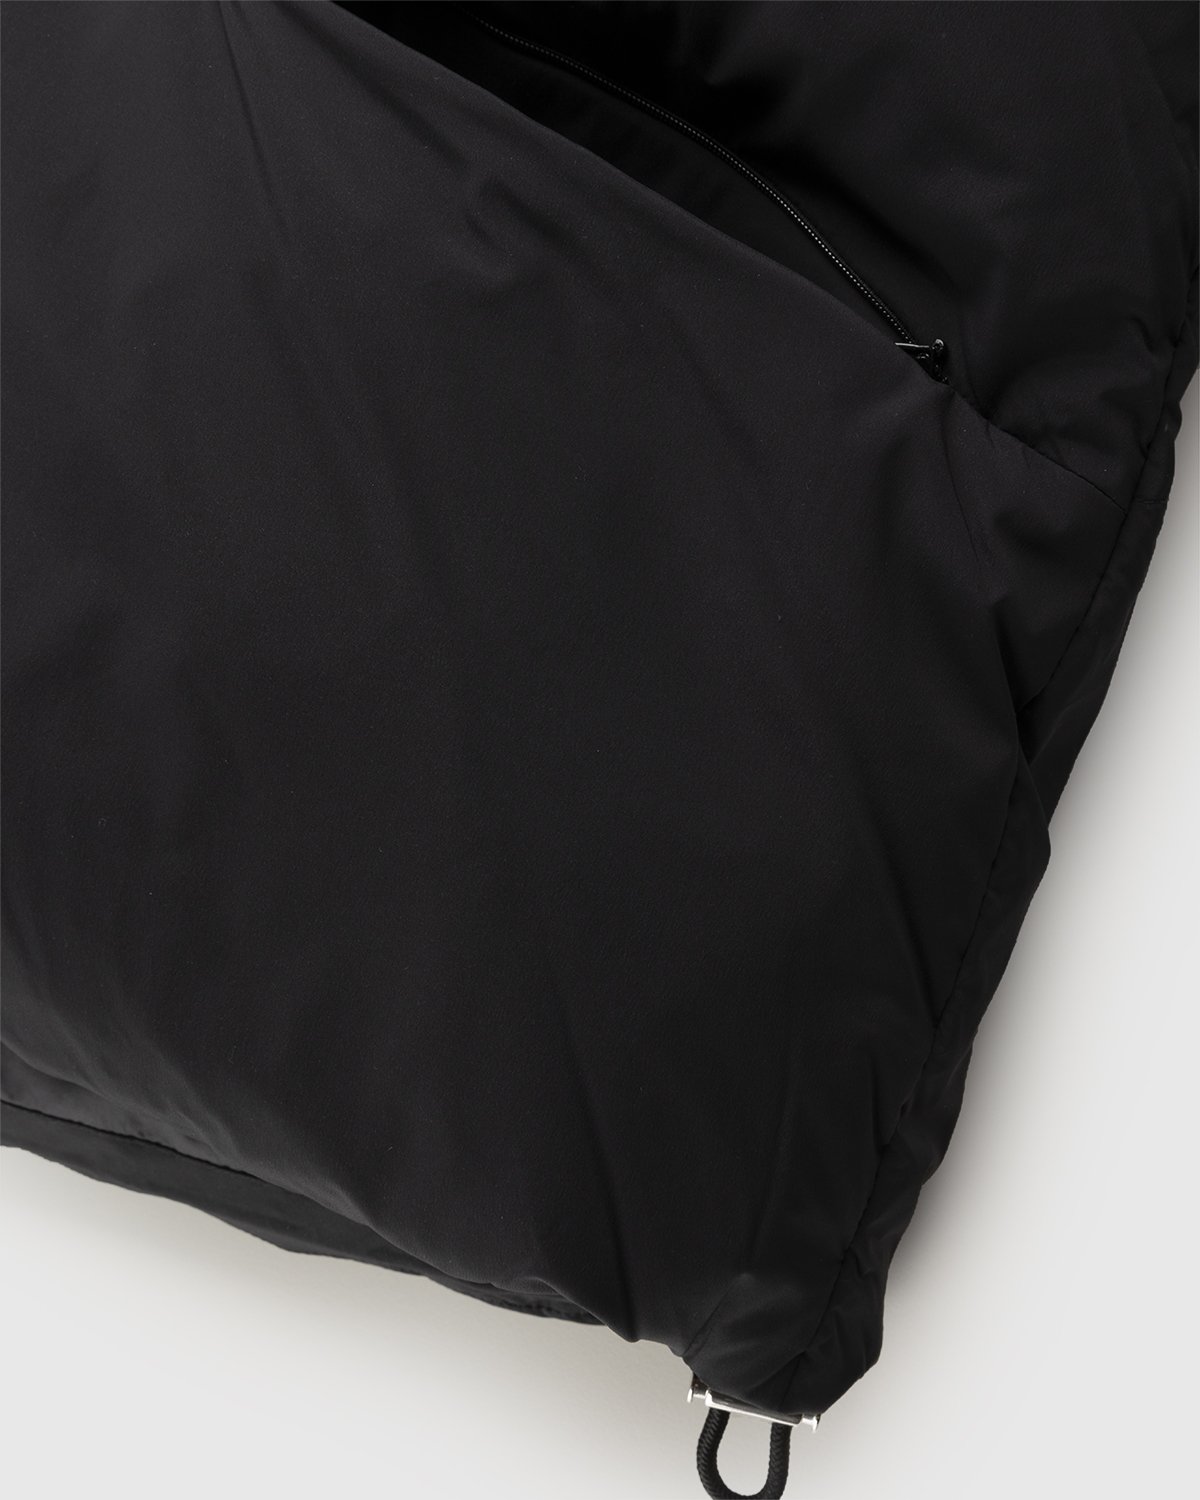 Acne Studios - Puffer Jacket Black - Clothing - Black - Image 6